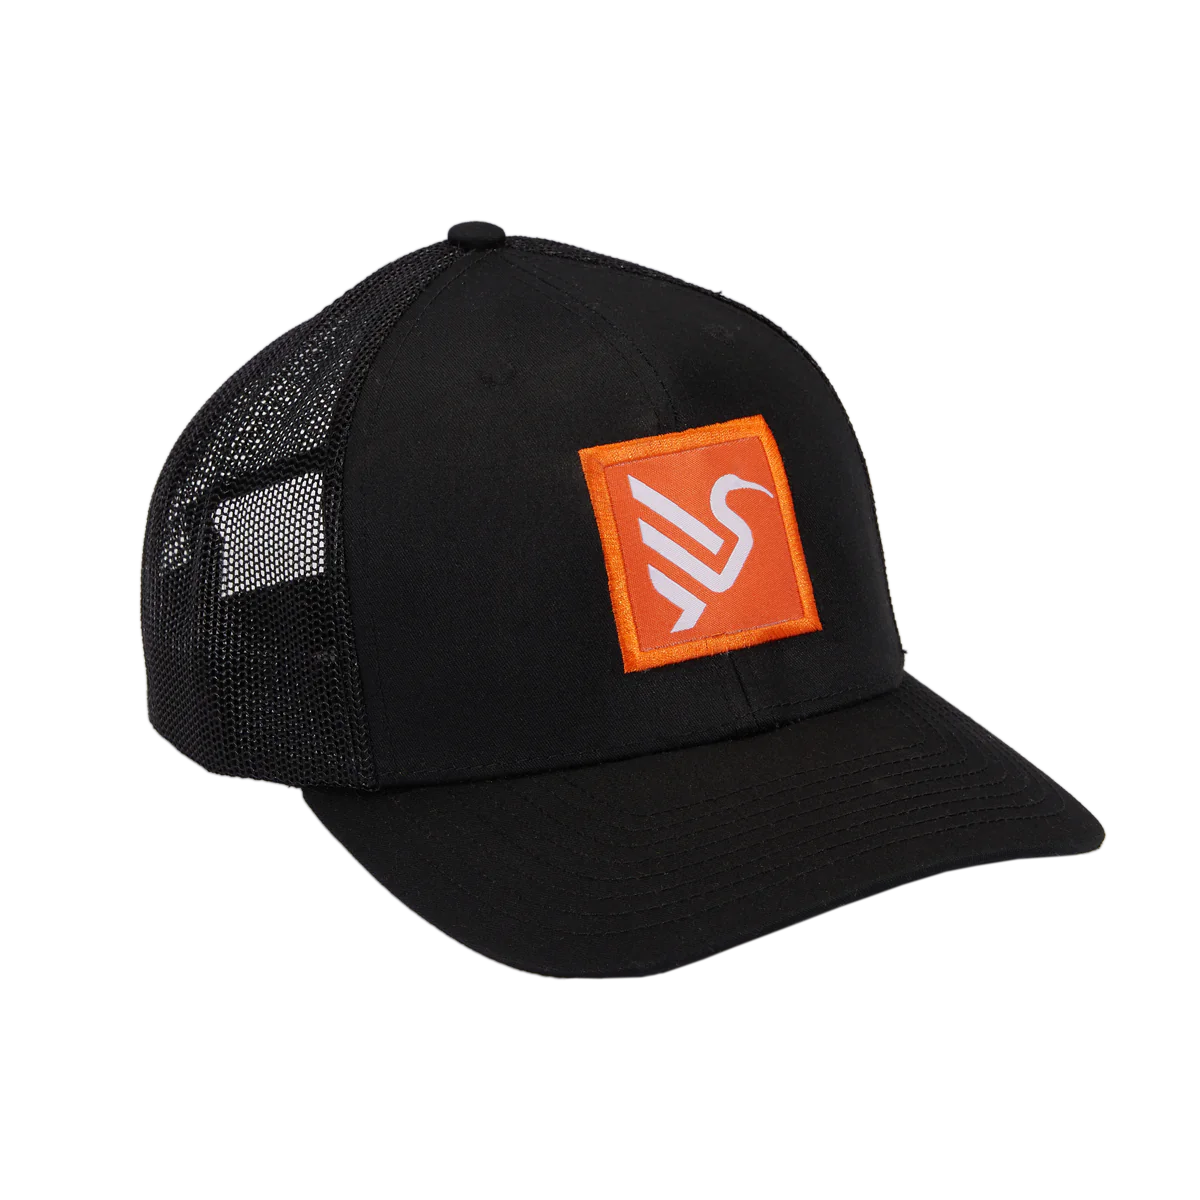 Ibis Trucker Hat - Black-Orange Shield